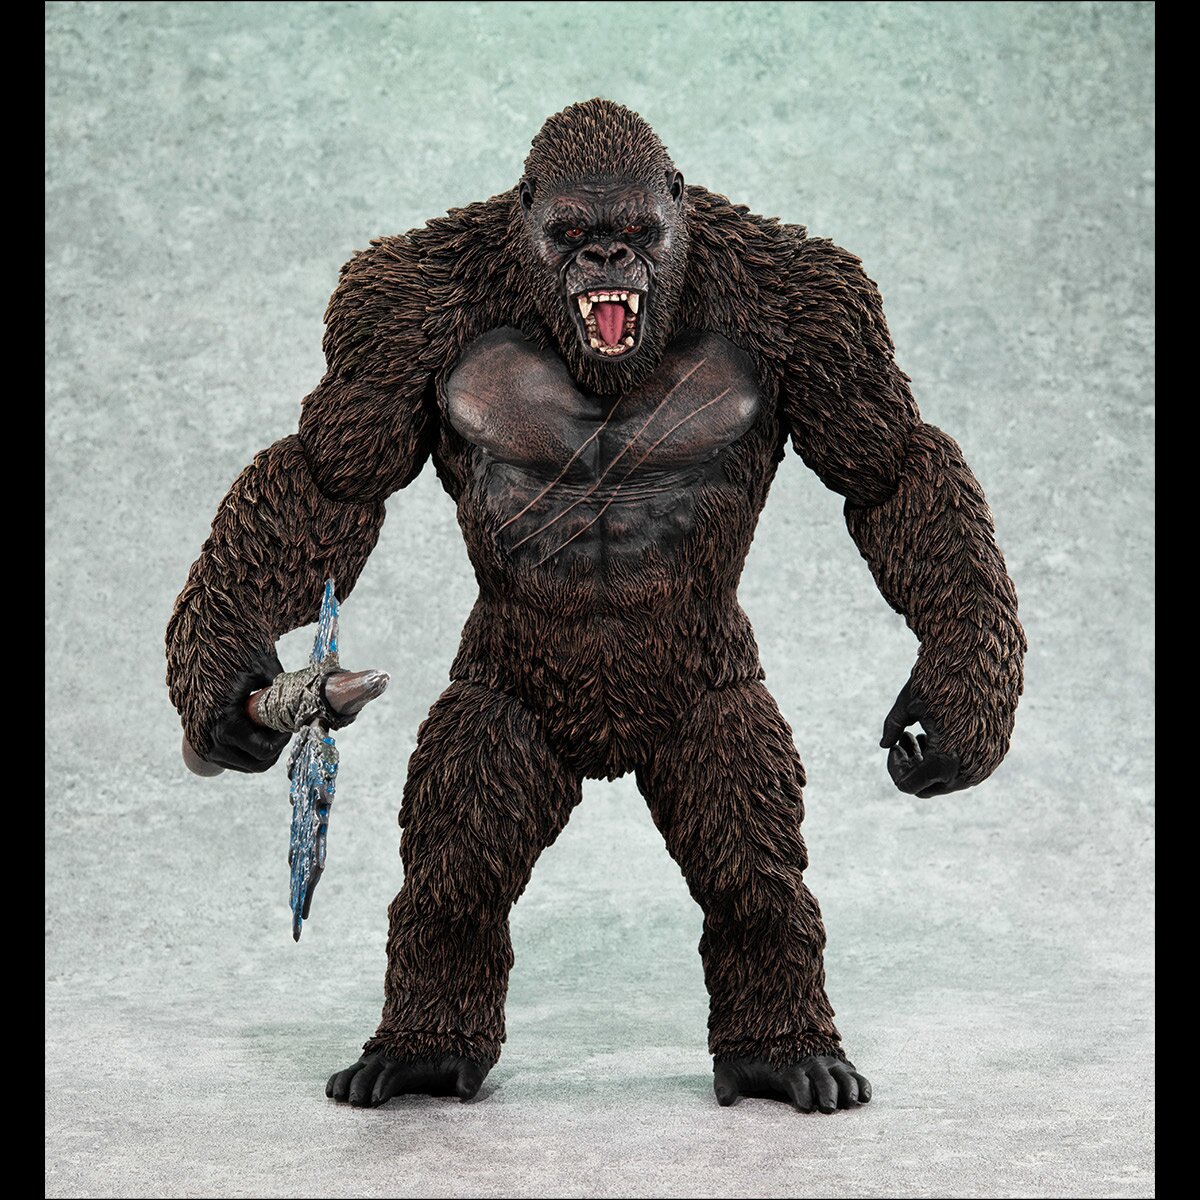 UA Monsters Kong from Godzilla vs. Kong (2021)